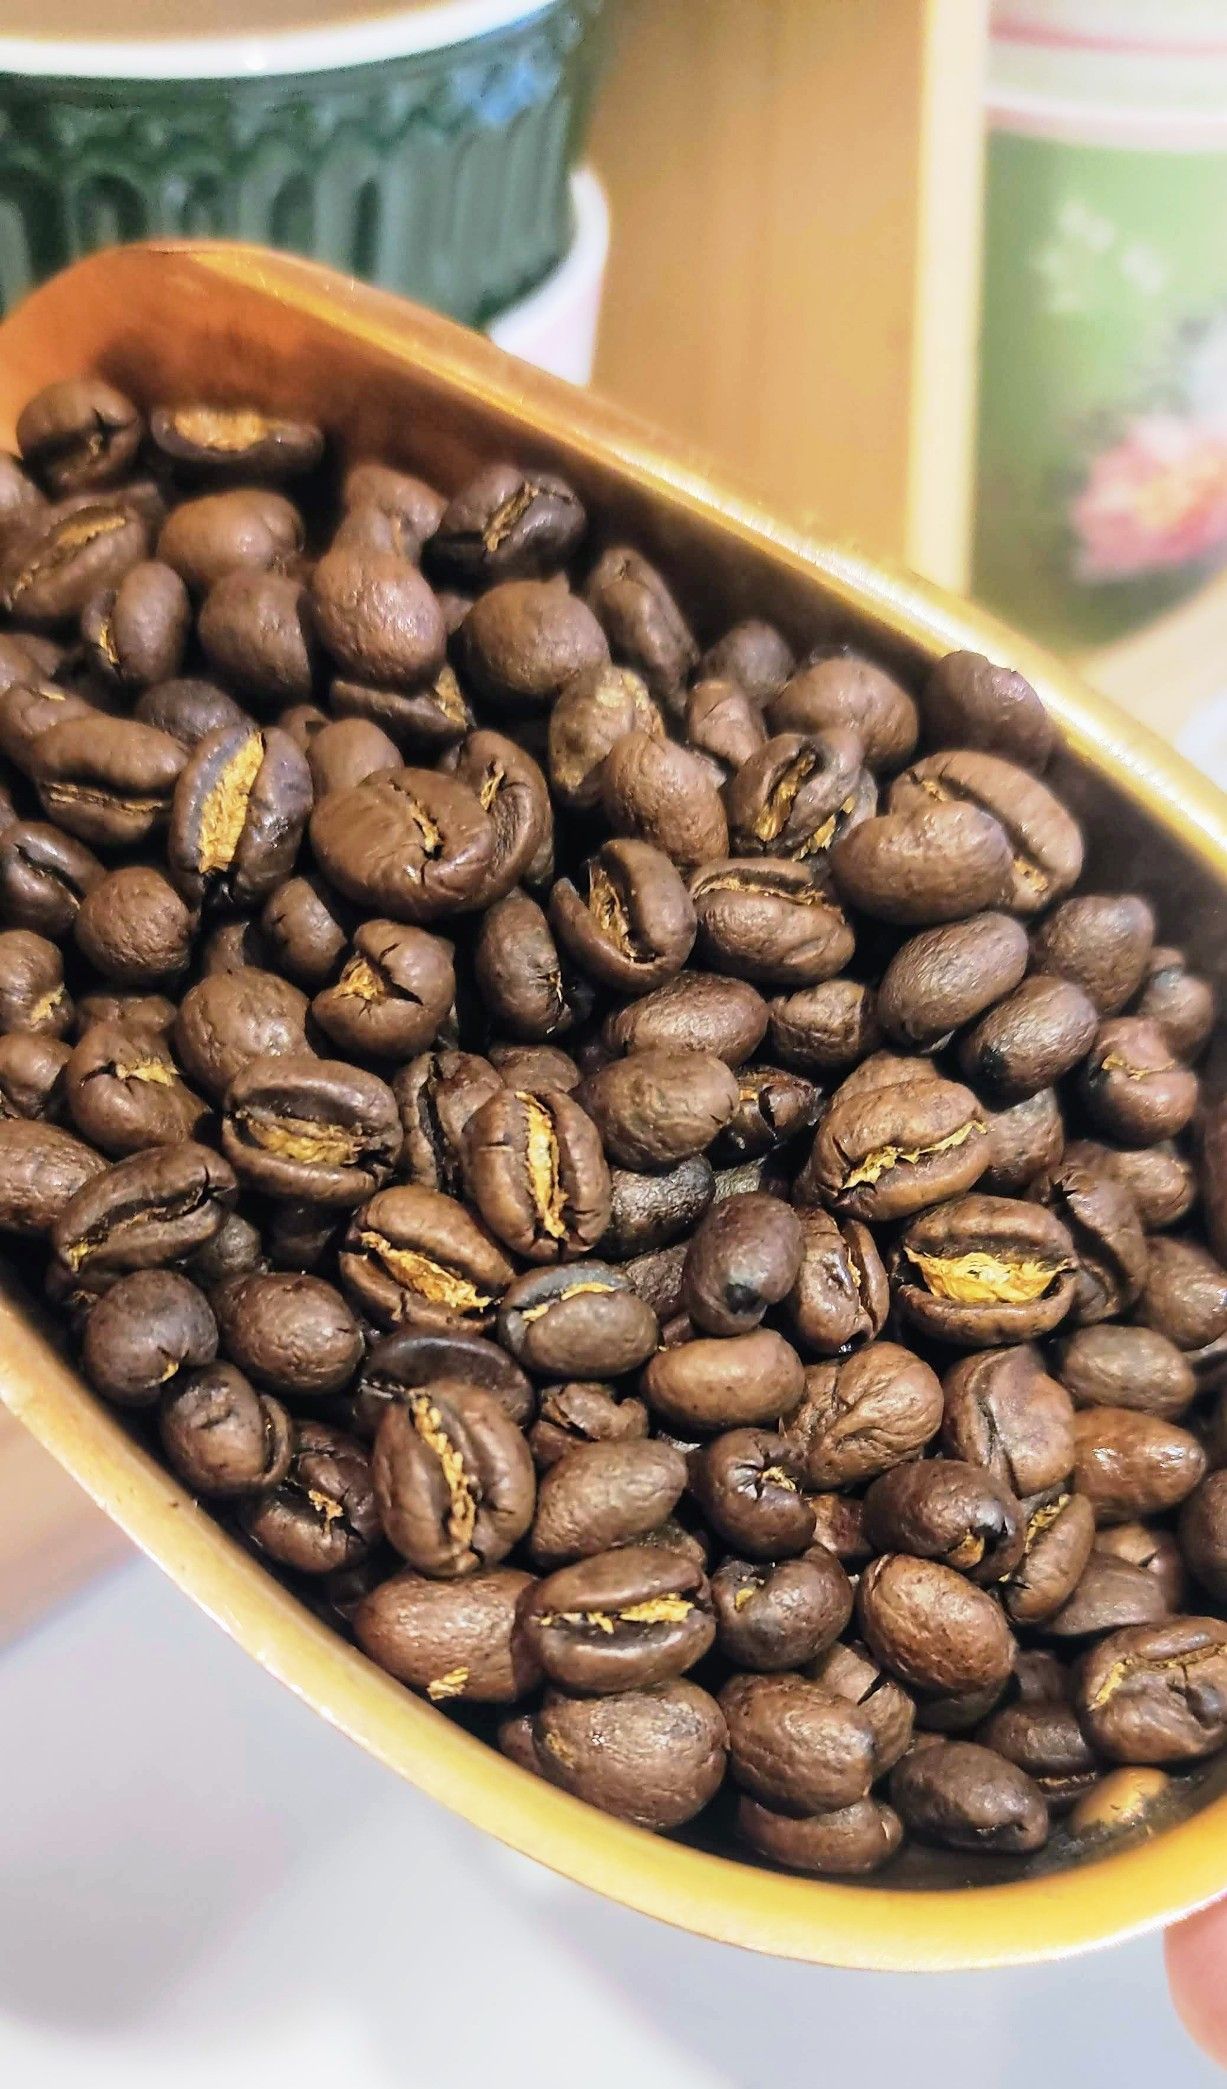 Cafè de TANZANIA Caracolillo "Peaberry" , 250 grams. A INHALA pots trobar una selecció de cafès d’arreu del món, Portalet, 9, Granollers, Barcelona. Cafè de TANZANIA Caracolillo "Peaberry" en paquet de 250 grams. Els grans de cafè ténen un tamany molt petit en forma de cargolí, d’ aquí el seu nom de Caracolillo. Durant molt de temps es considerava com un defecte degut a la seva forma i des de ja fa uns anys està considerat com un dels millors del món. És un cafè Aràbica 100% i torrat natural suau. És un cafè de sabor dolç, amb molt de cos, una acidesa lleugera i molt rodó en boca. Servit en paquets de 250 grams, les nostres bosses són de paper reciclables i biodegradables. El servim en paquets de 250 grams, en gra o mòlt? Quina cafetera tens? A INHALA pots trobar una selecció de cafès d’arreu del món, estem a Granollers, al carrer Portalet, ben a prop de la Porxada.